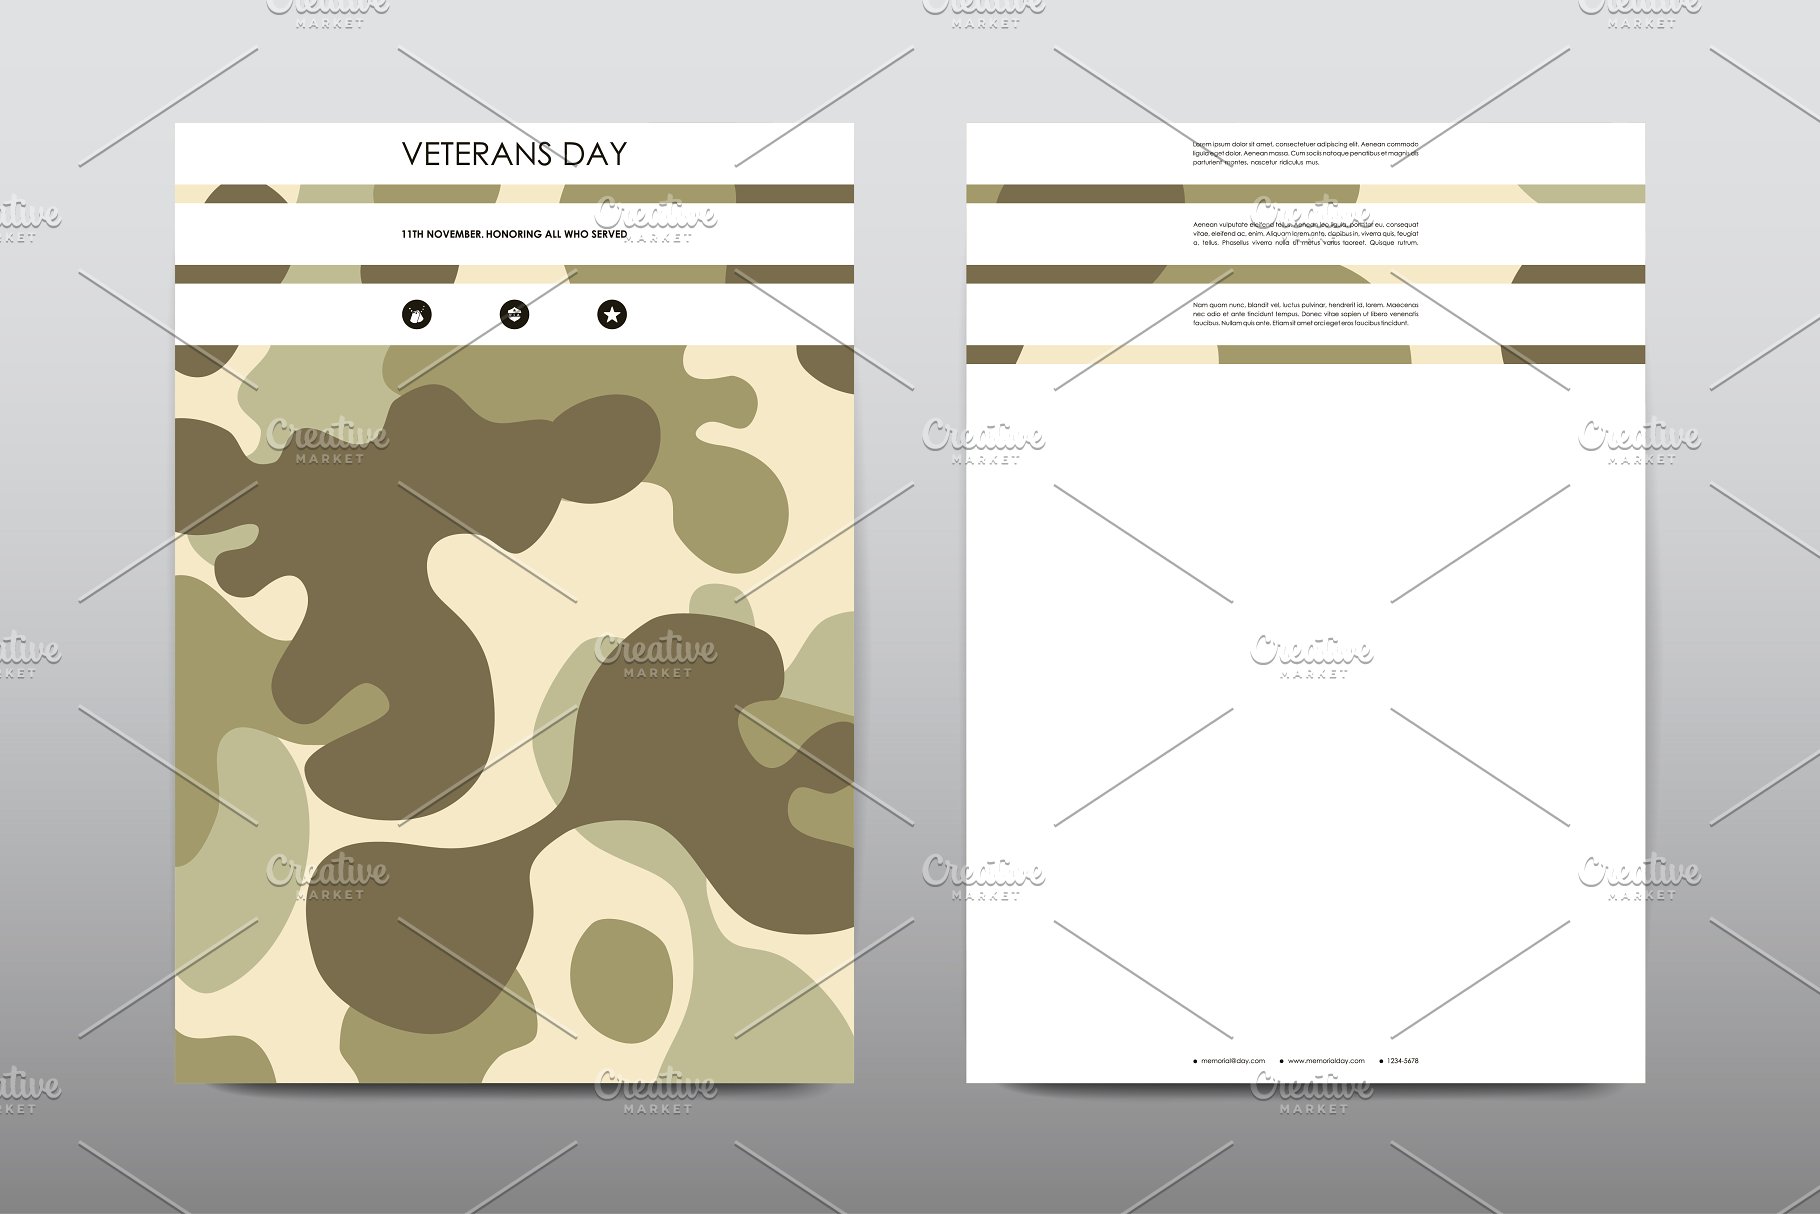 40+老兵节军人宣传小册模板 Veteran’s Day Brochures Bundle插图(25)